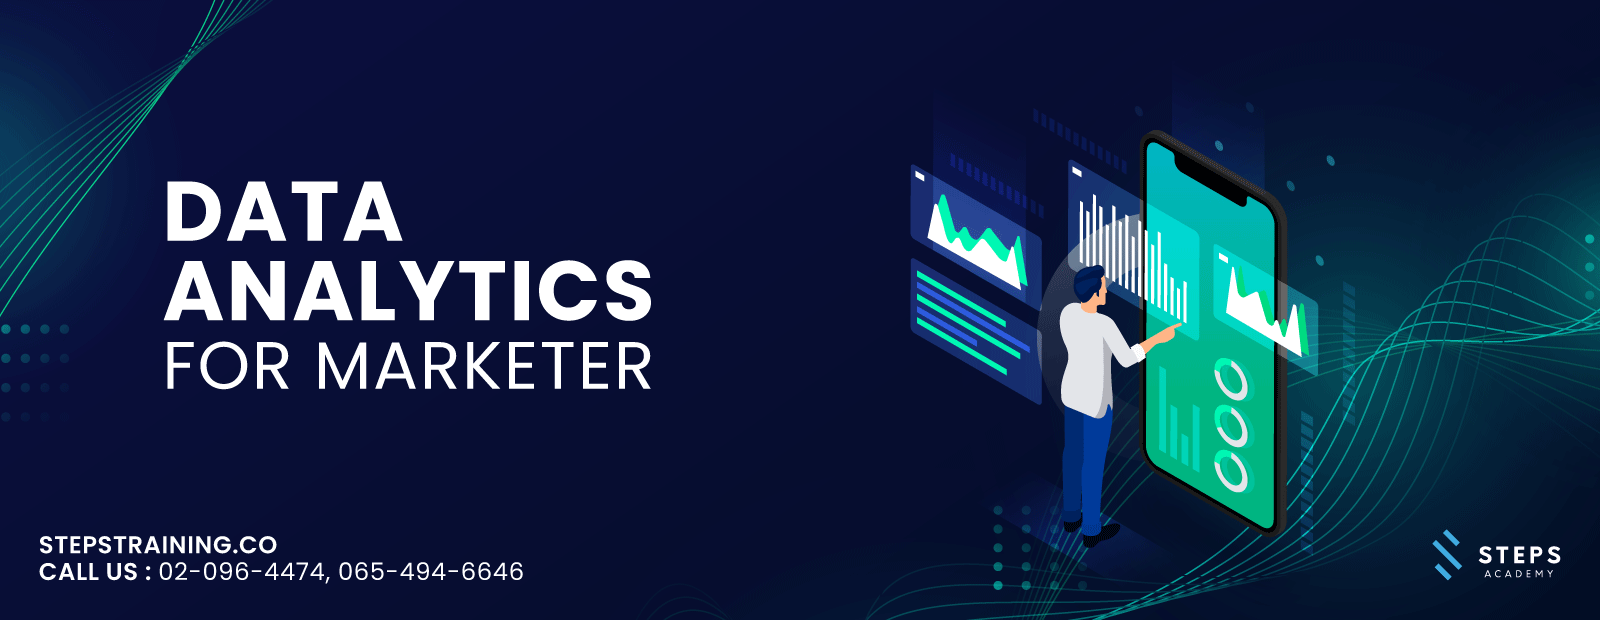 หลักสูตรเรียน Data Analytics for Marketer